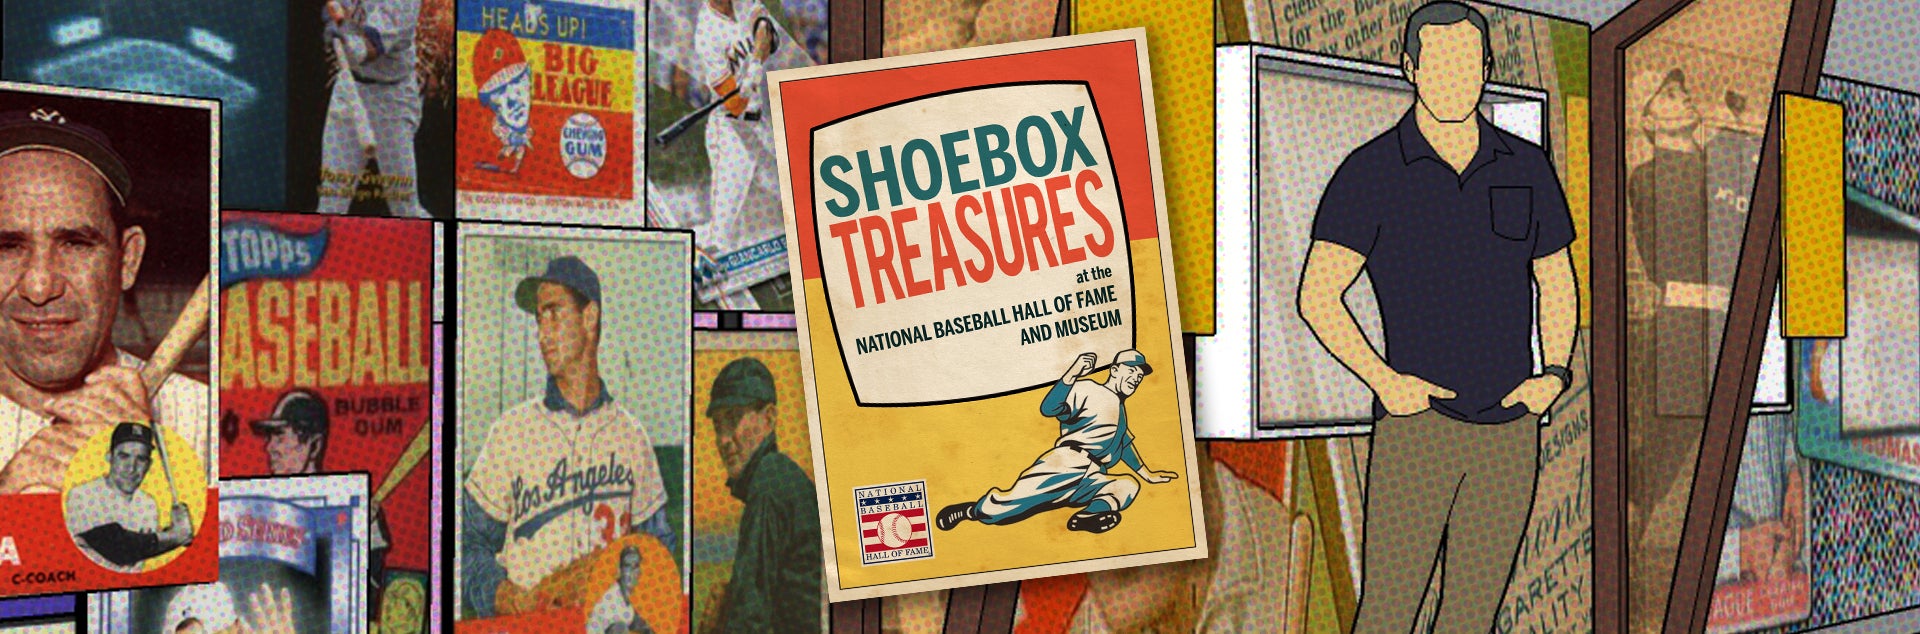 Shoebox Treasures Exhibit: Donors